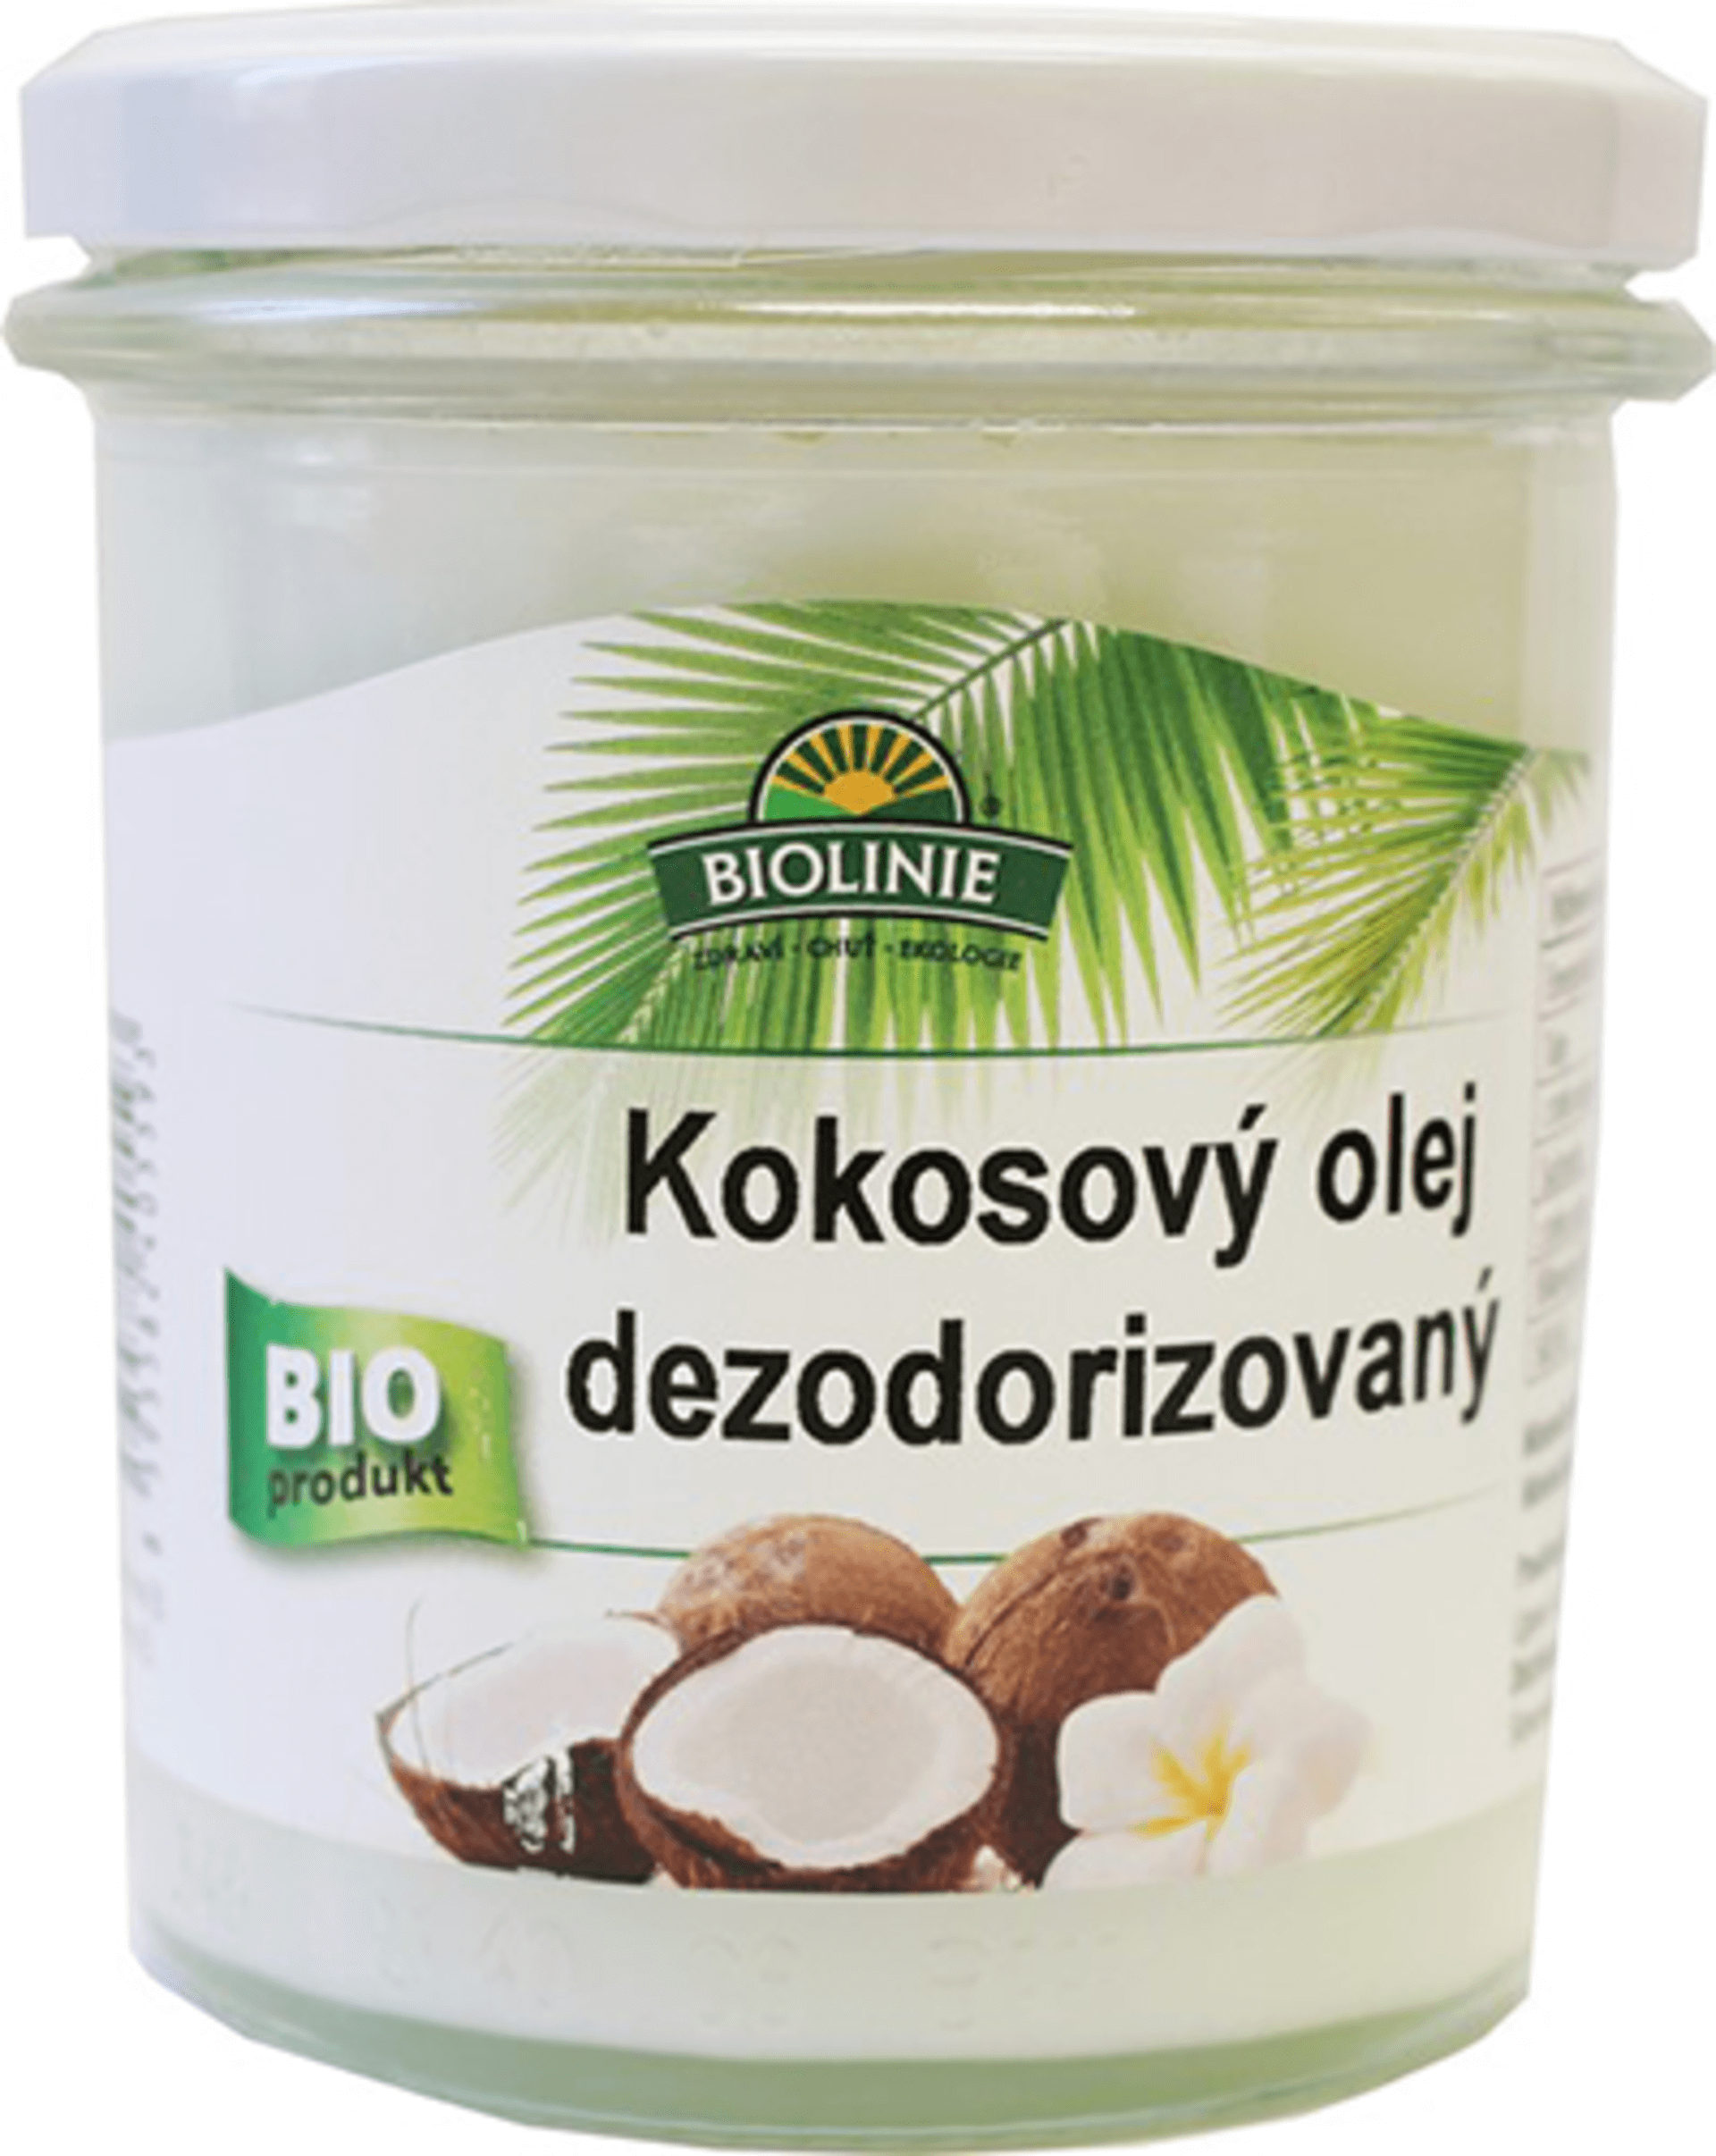 E-shop Biolinie Olej kokosový panenský dezodorizovaný BIO 240 g